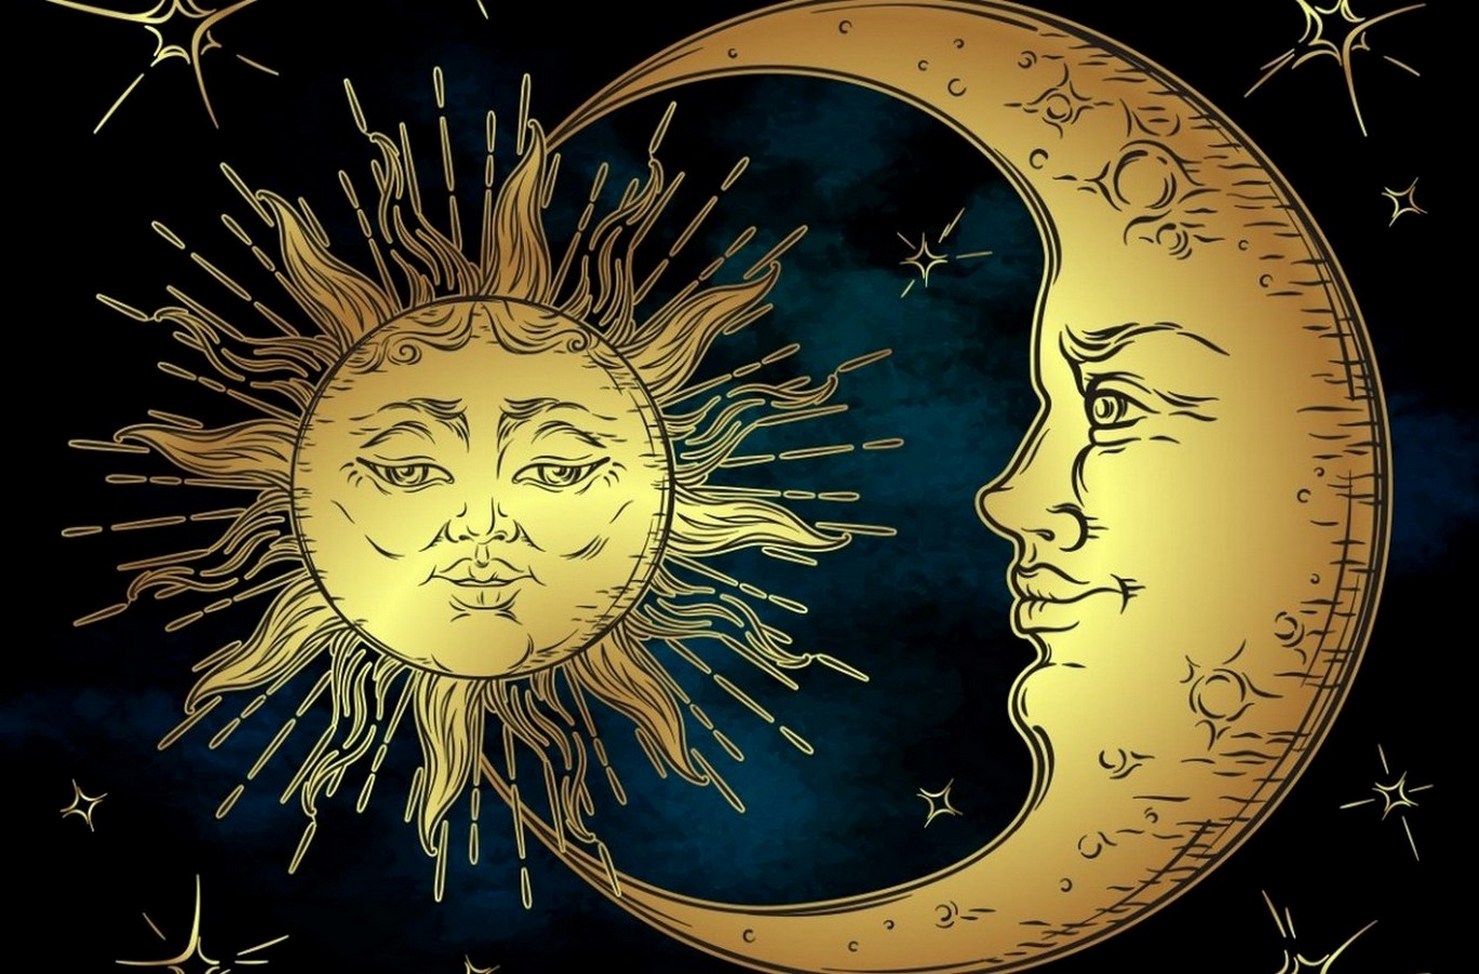 День равноденствия эзотерика. Солнце и Луна. Kjcywt b Keyf. Изображение солнца и Луны. Чолйе и Луна.